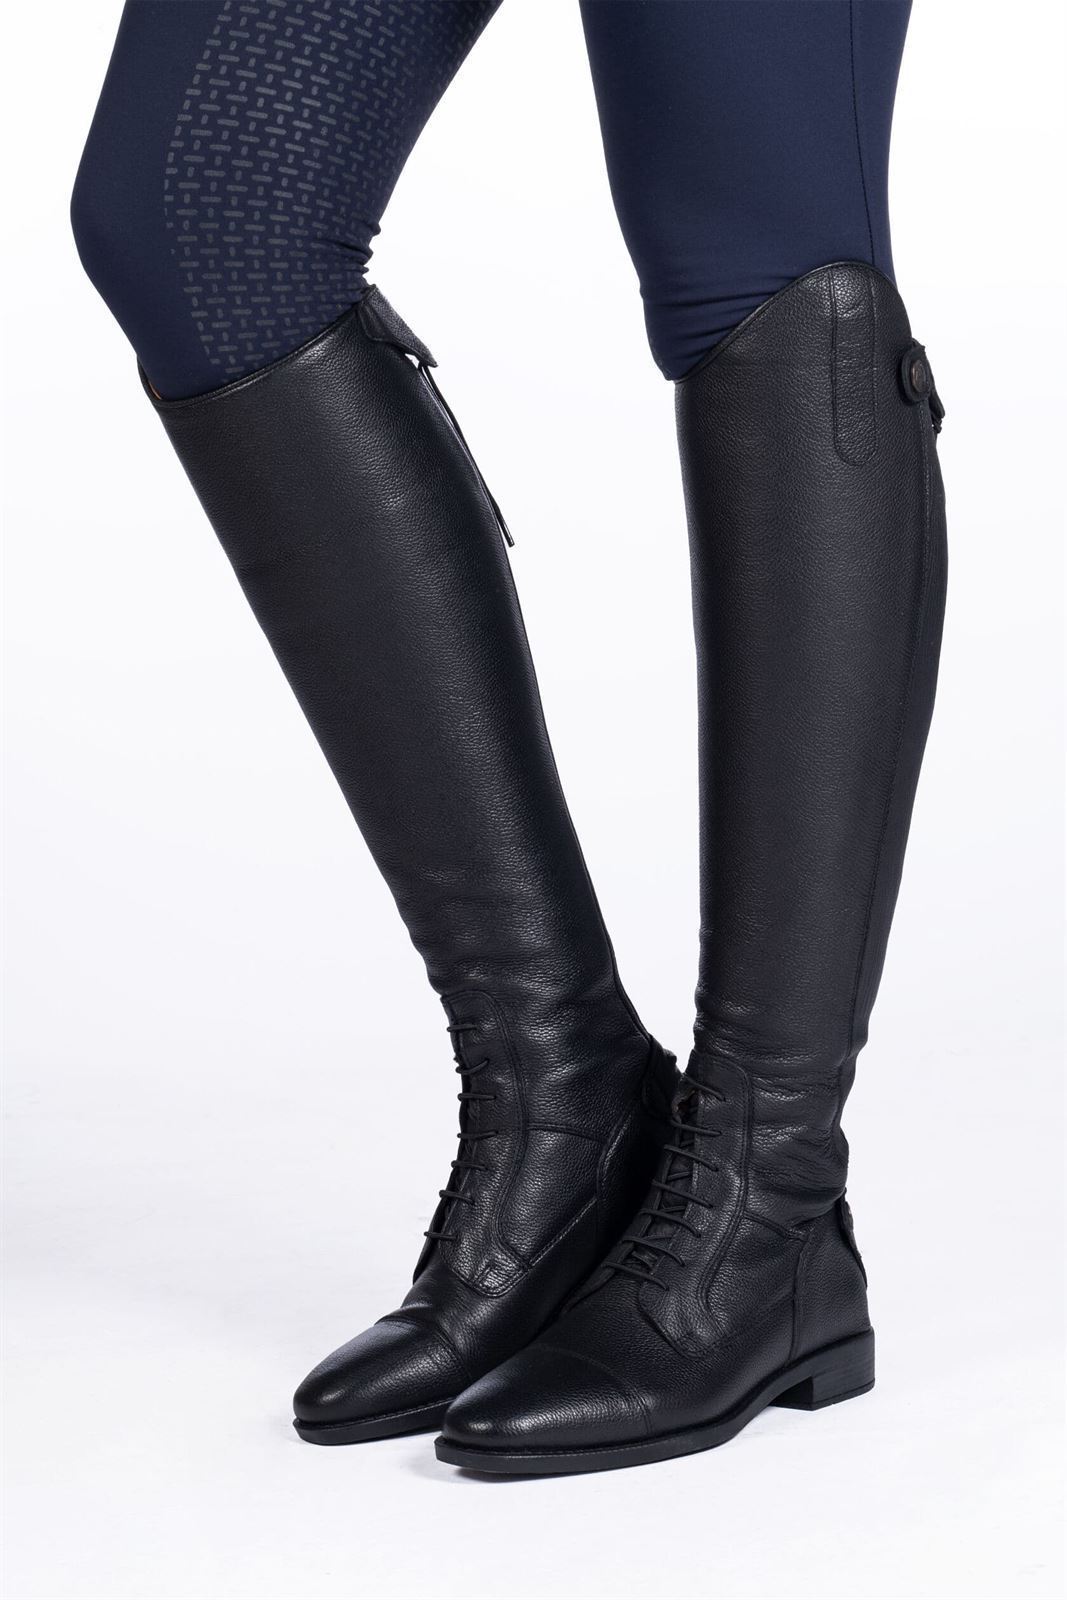 Botas de cuero unisex HKM Sports Equipment Titanium Style, color negro - Imagen 1